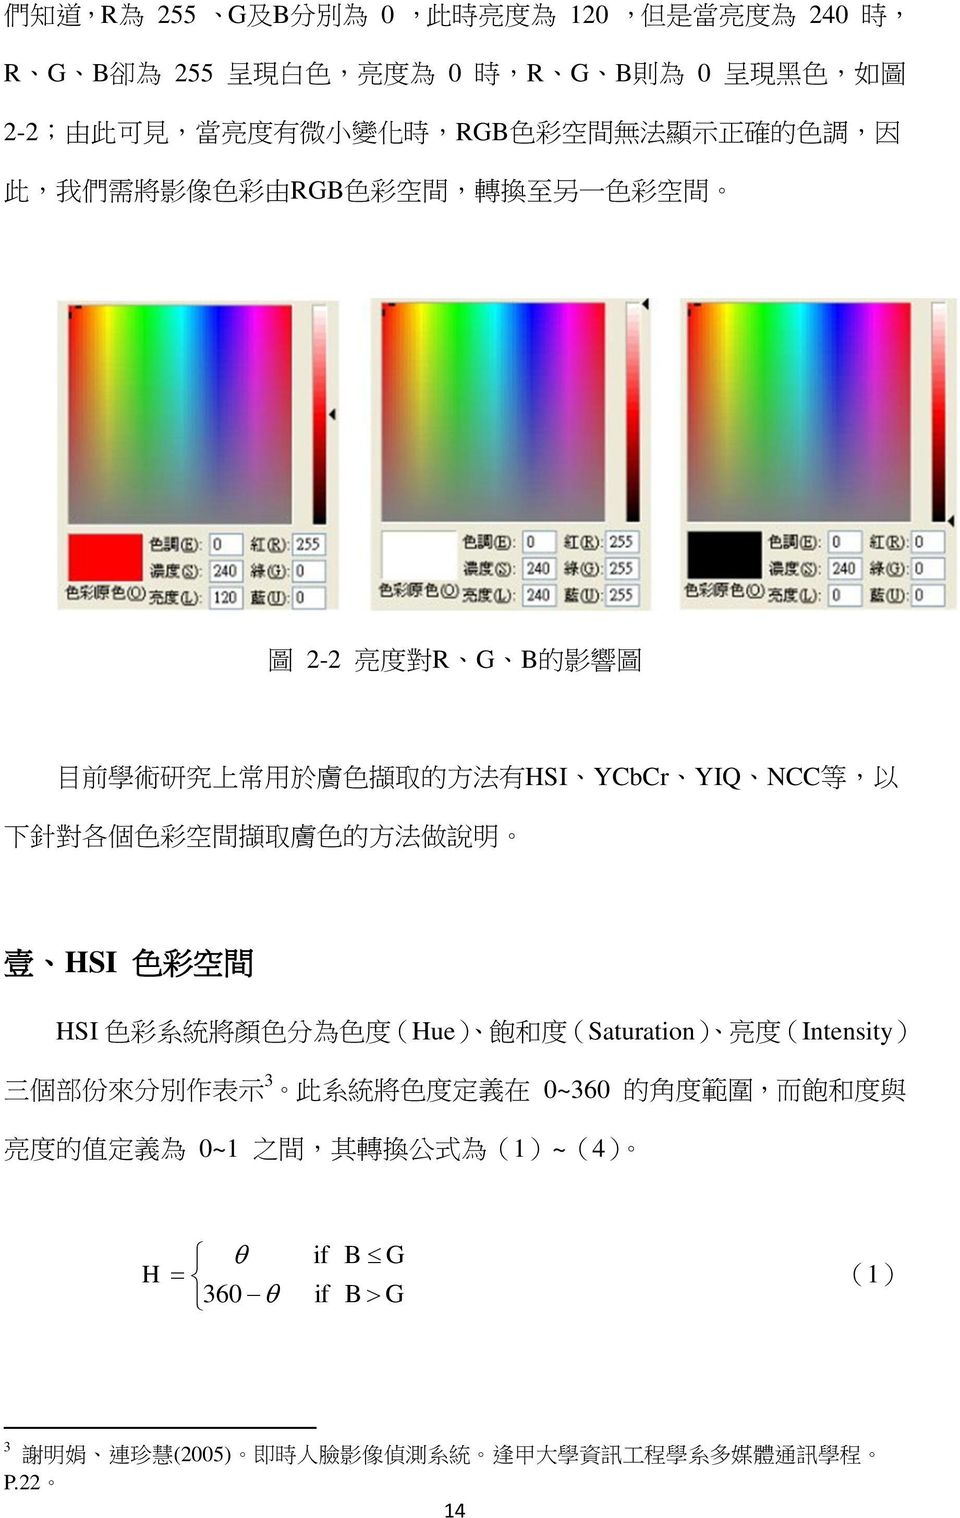 各 個 色 彩 空 間 擷 取 膚 色 的 方 法 做 說 明 壹 HSI 色 彩 空 間 HSI 色 彩 系 統 將 顏 色 分 為 色 度 (Hue) 飽 和 度 (Saturation) 亮 度 (Intensity) 三 個 部 份 來 分 別 作 表 示 3 此 系 統 將 色 度 定 義 在 0~360 的 角 度